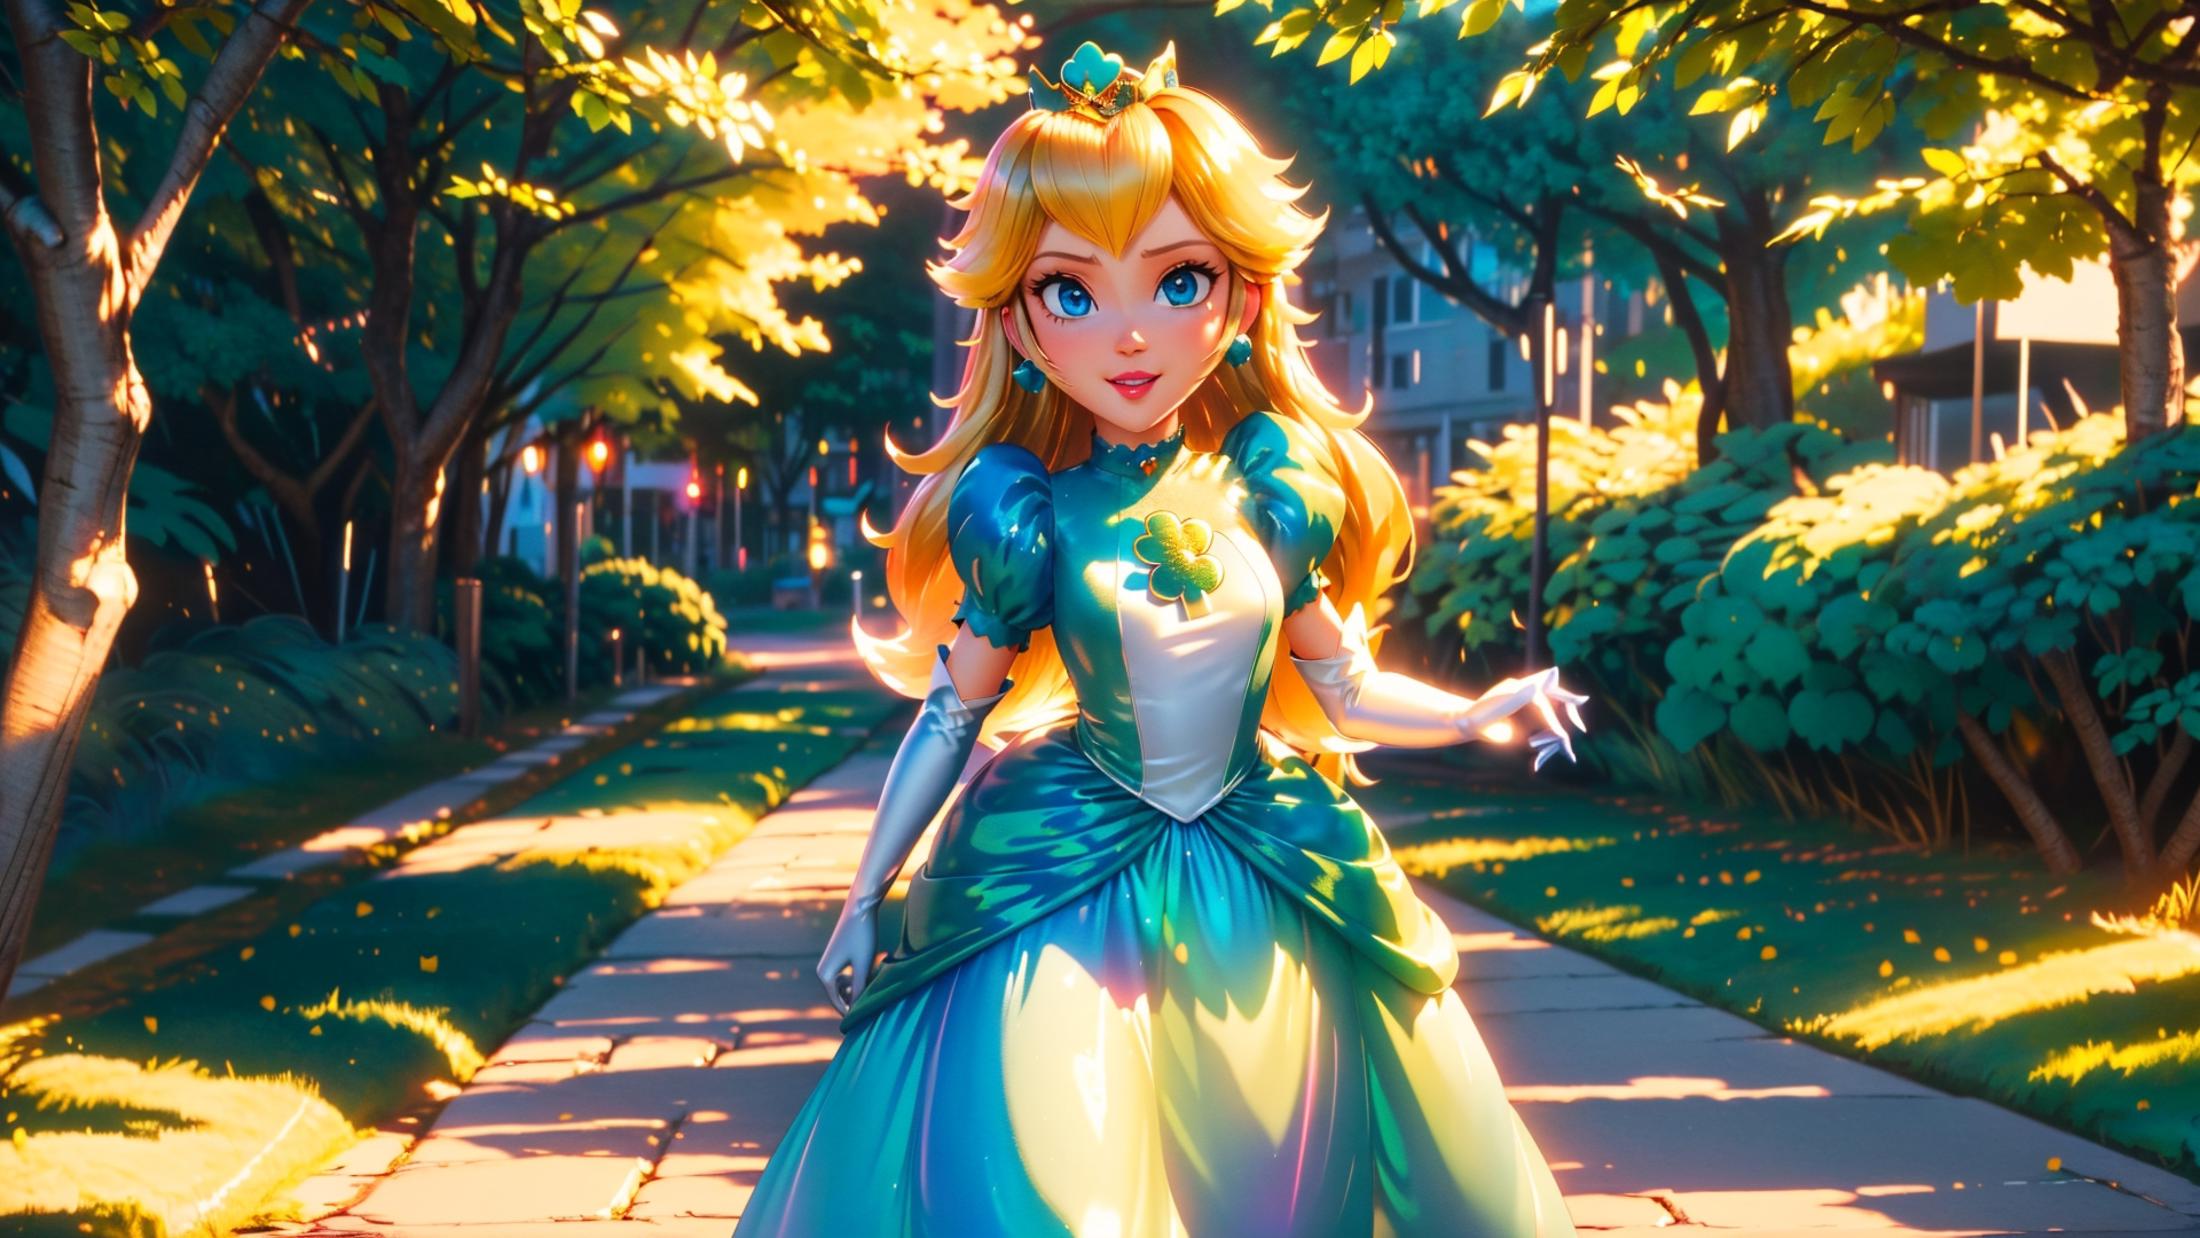 princess peach - The Super Mario Bros. Movie - movie like image by marusame